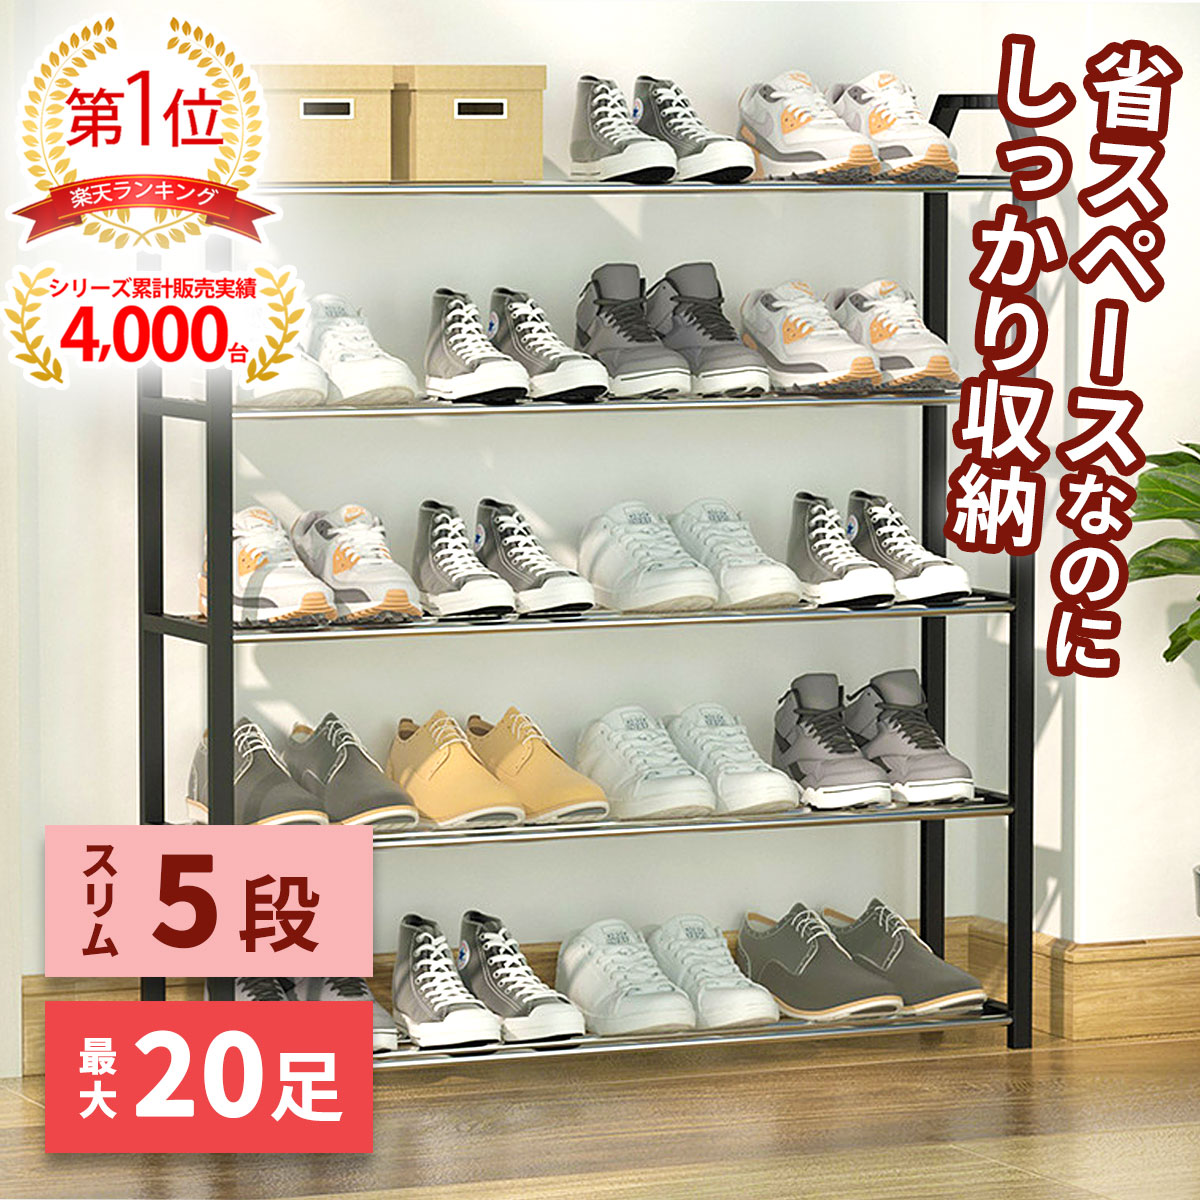 【楽天市場】シューズラック 省スペース 靴収納 靴箱 シューズボックス 下駄箱 薄型 靴入れ 靴箱 玄関収納 大容量 靴置き 組み立て式 5段 :  e-shop aoakua